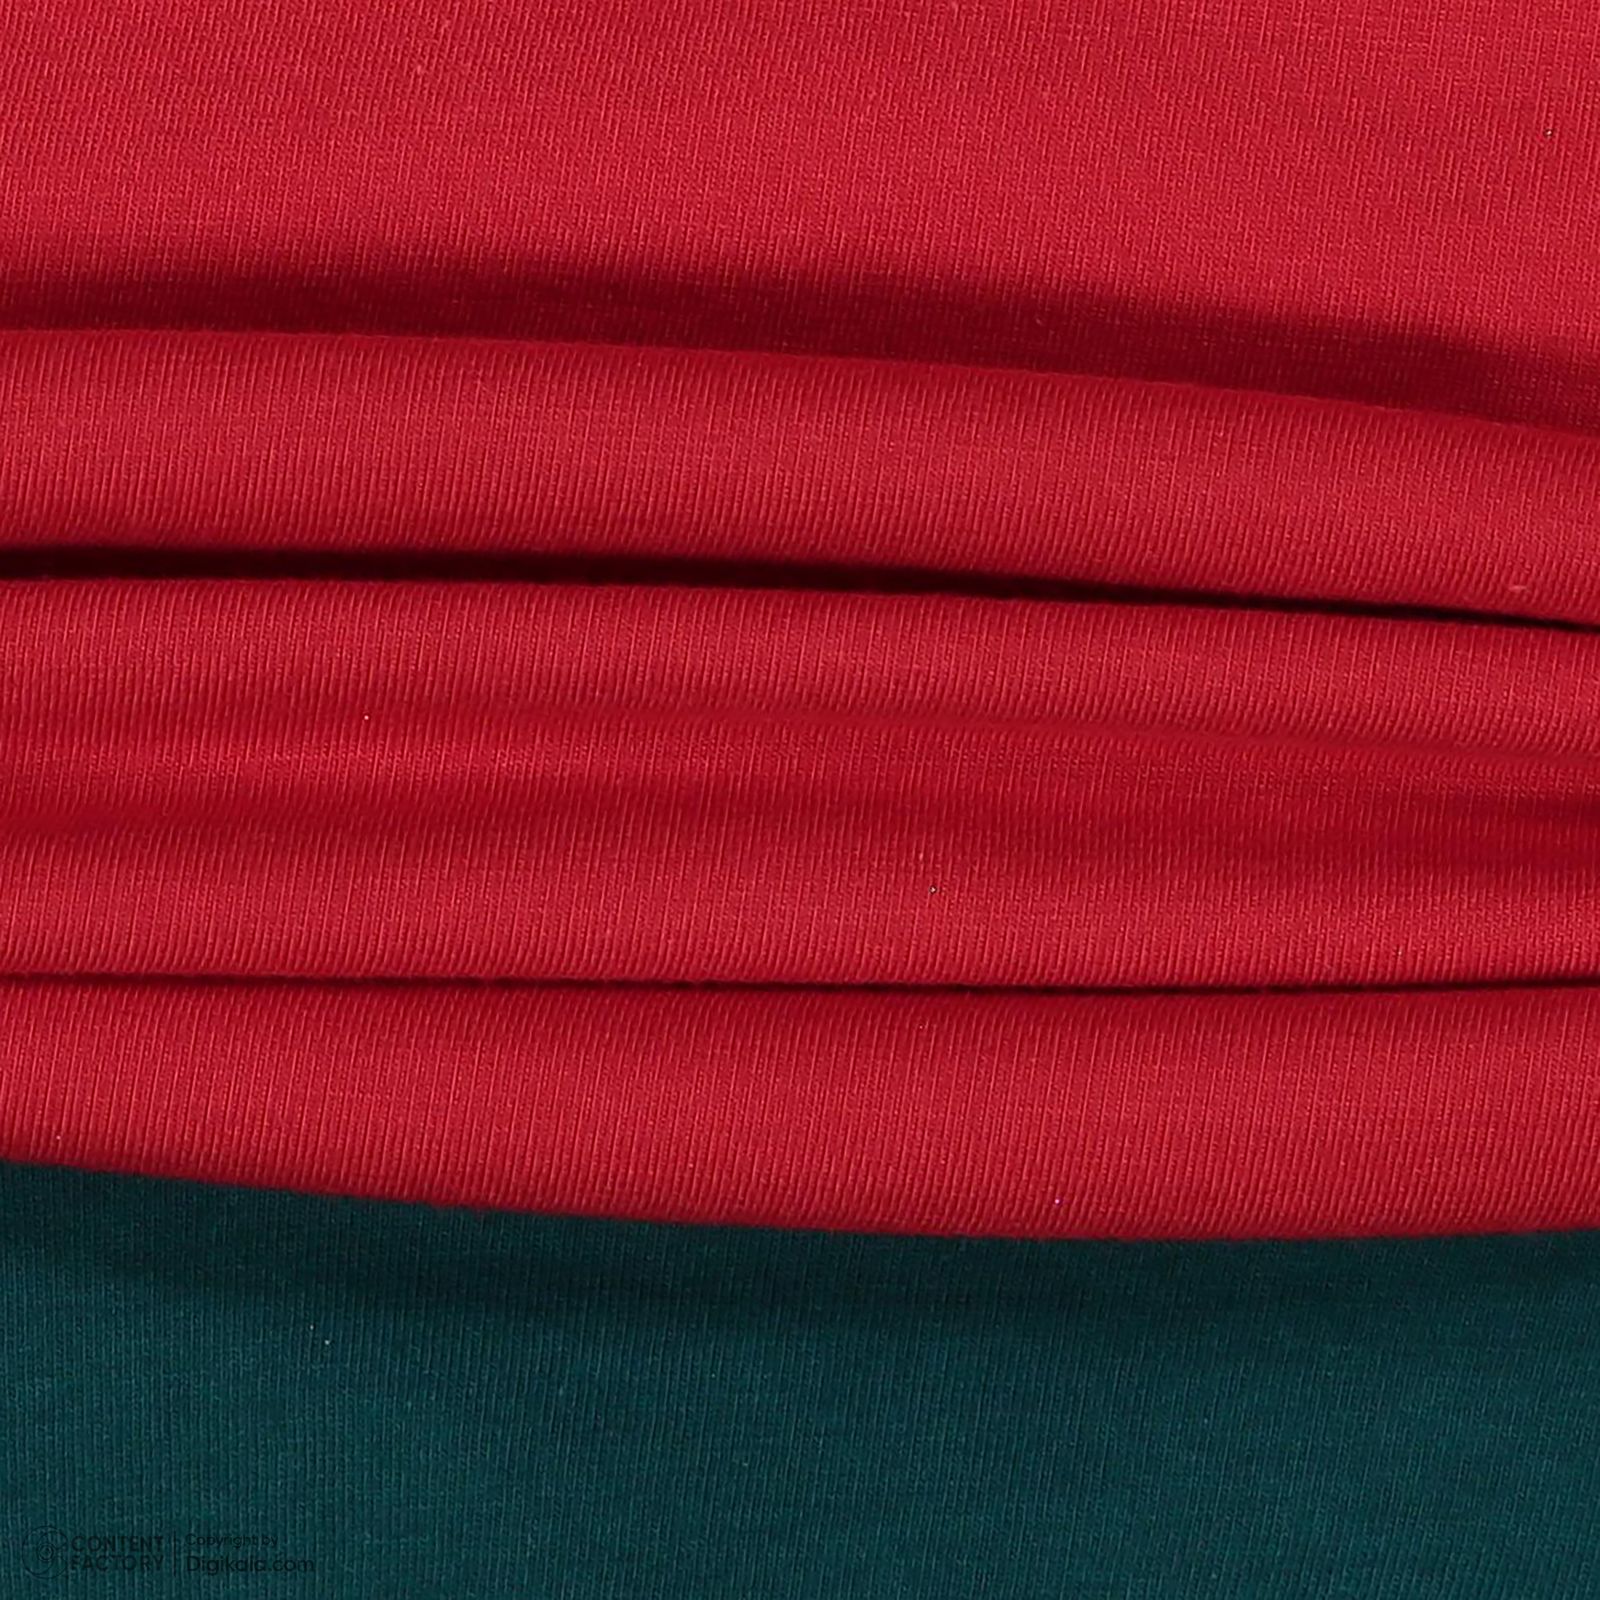 ست تی شرت و شلوار بچگانه ناربن مدل 1521490 رنگ قرمز -  - 3